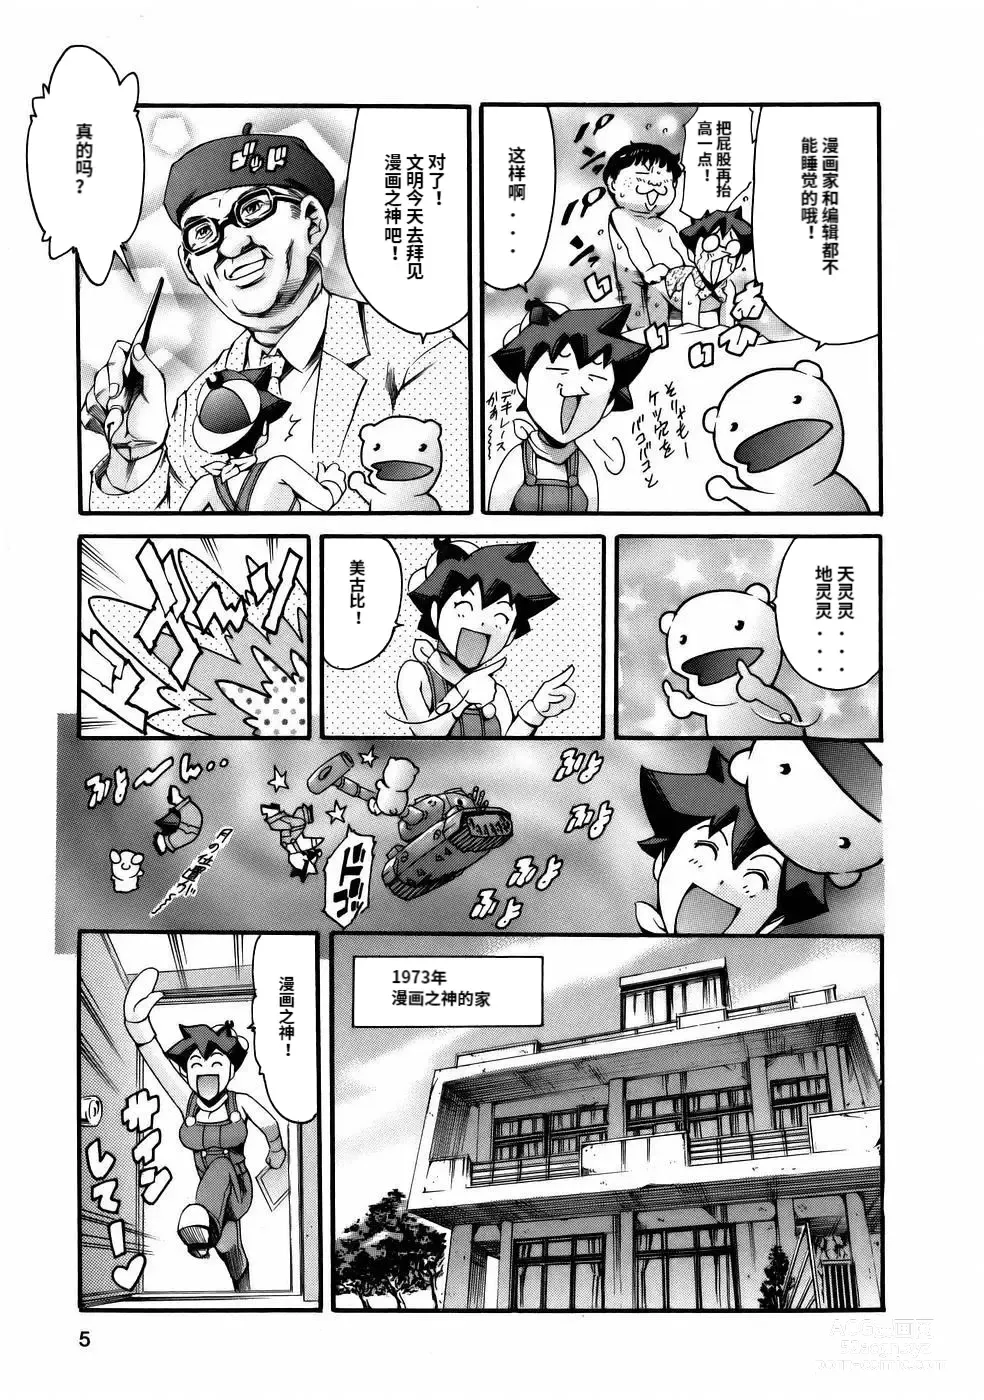 Page 7 of manga Manga Naze Nani Kyoushitsu